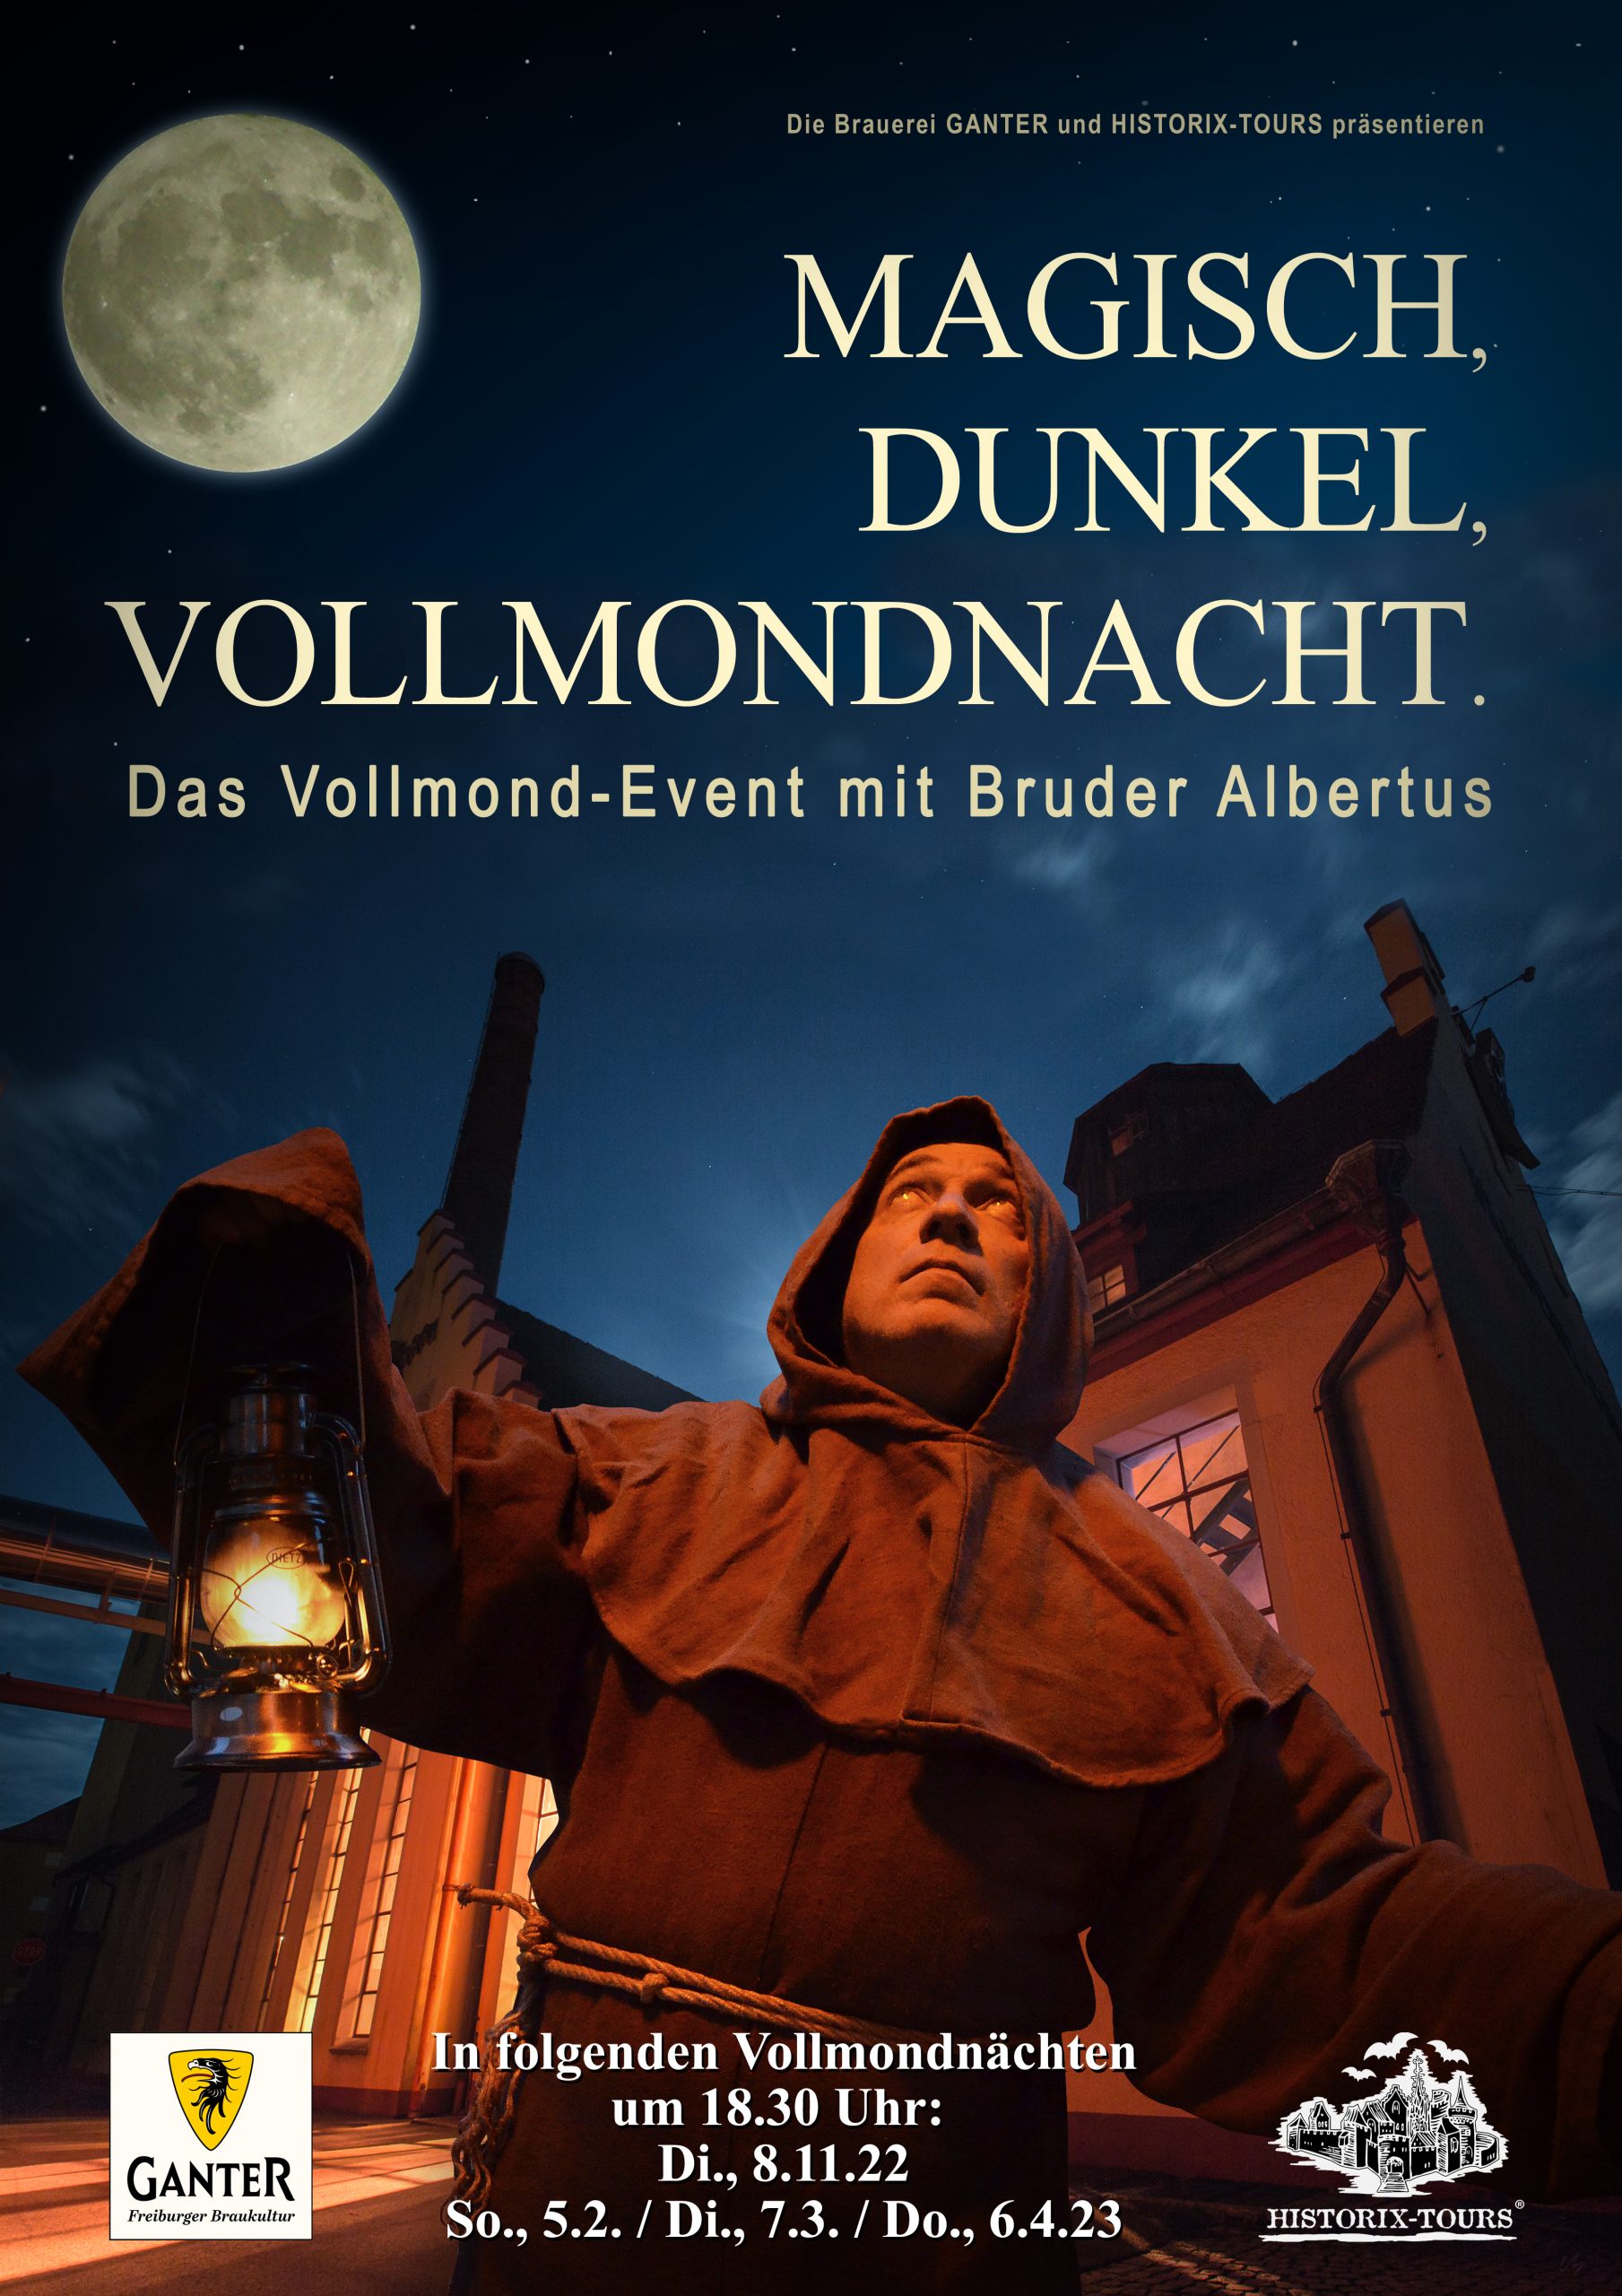 You are currently viewing Vollmond-Event: „Magisch, Dunkel, Vollmondnacht“ – In Zusammenarbeit mit der Brauerei Ganter